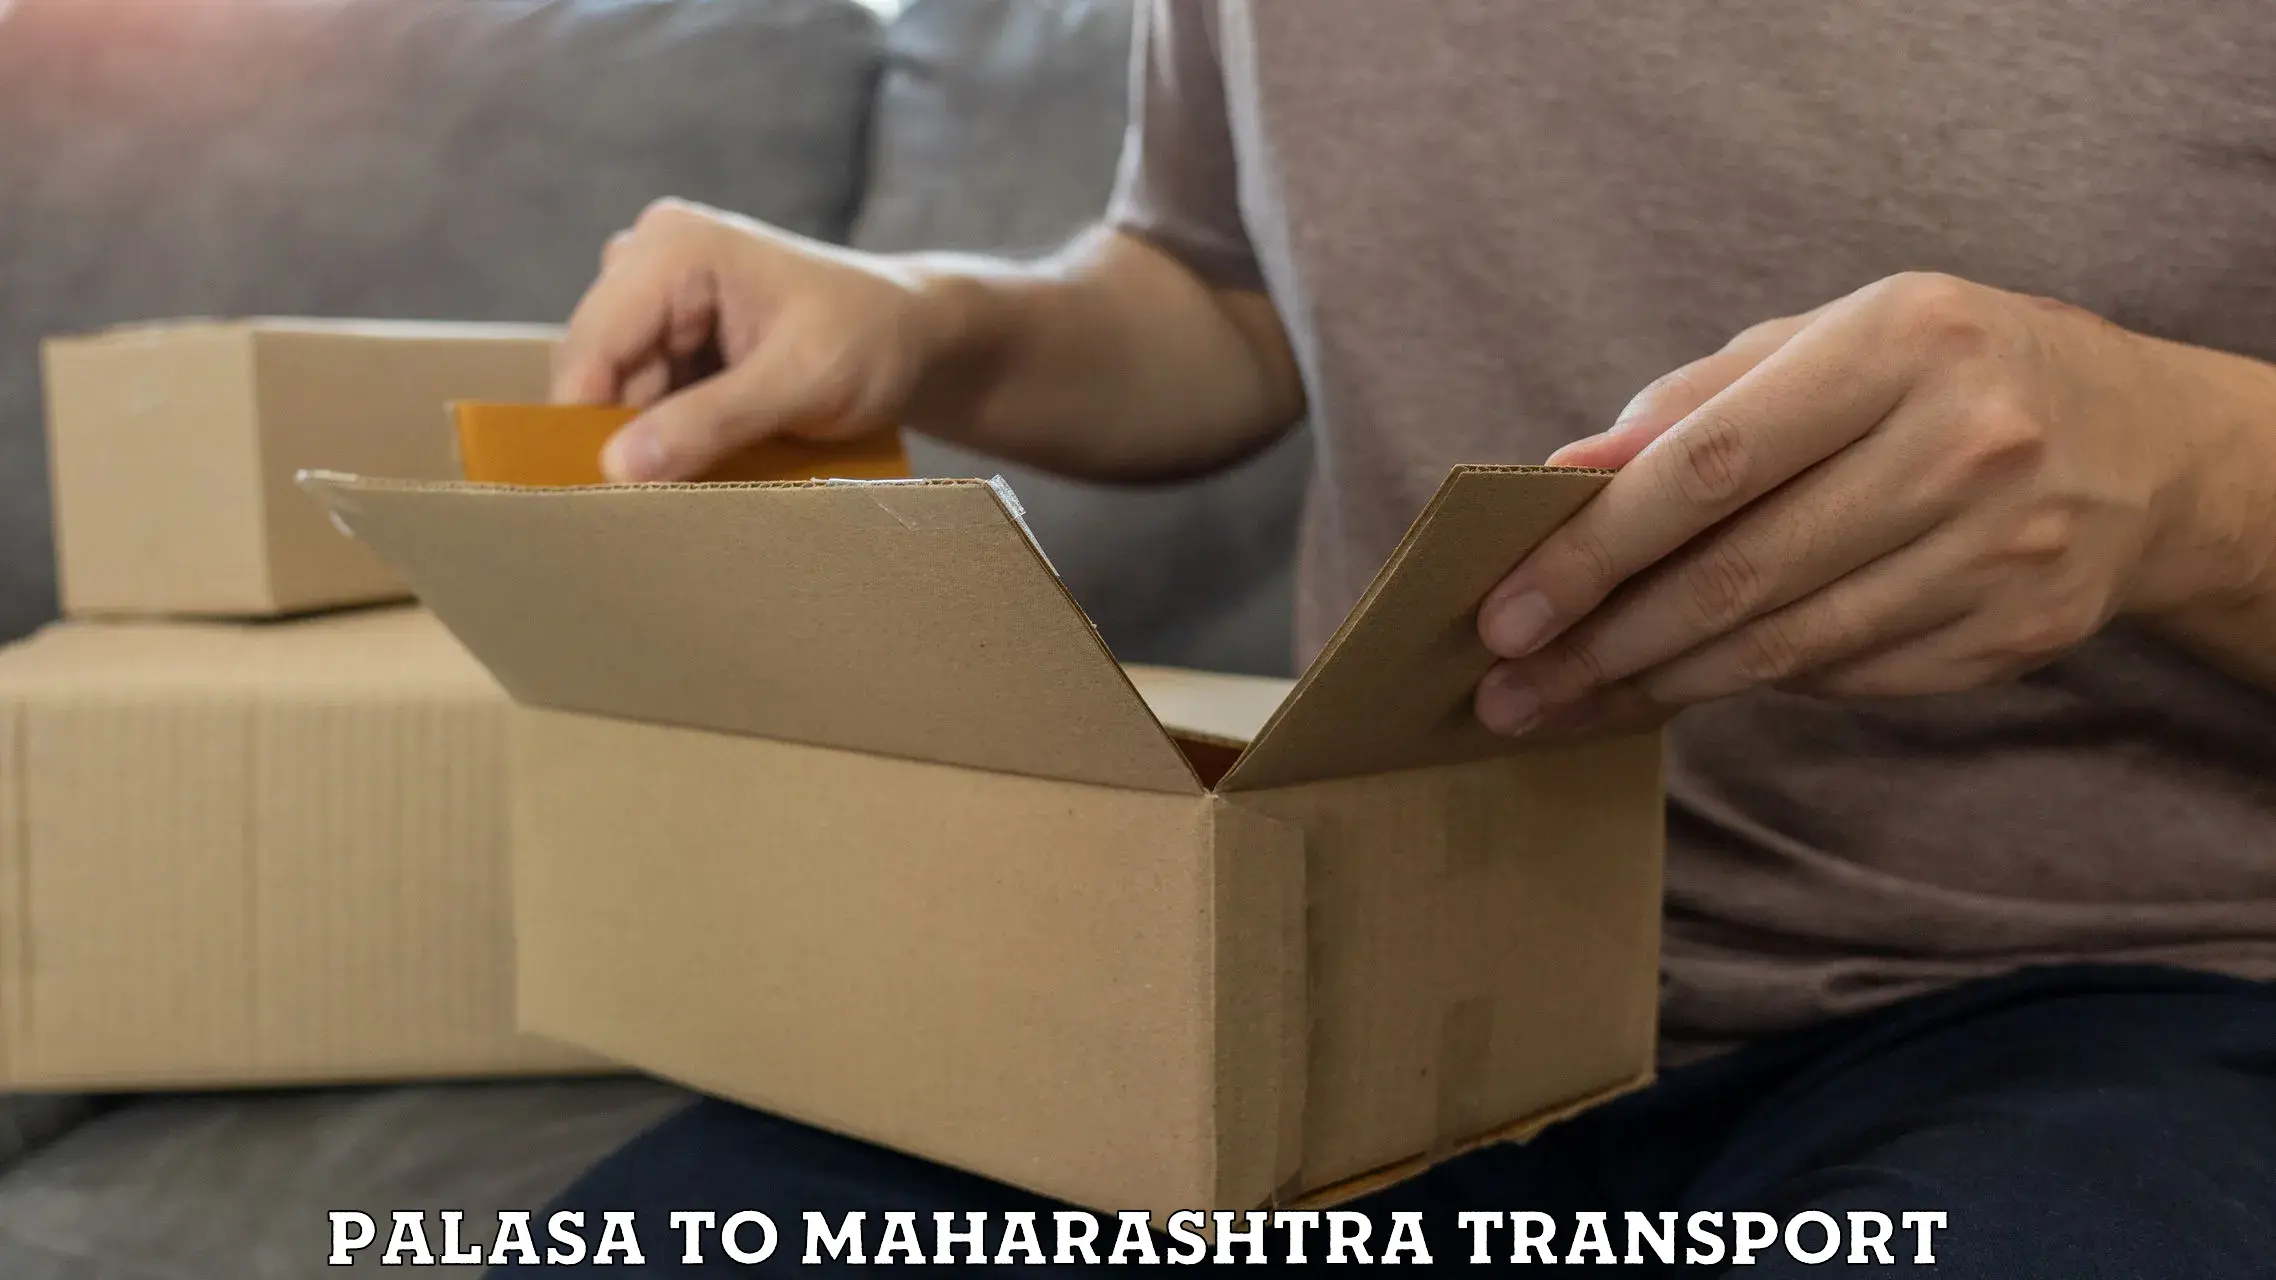 Furniture transport service Palasa to Morshi